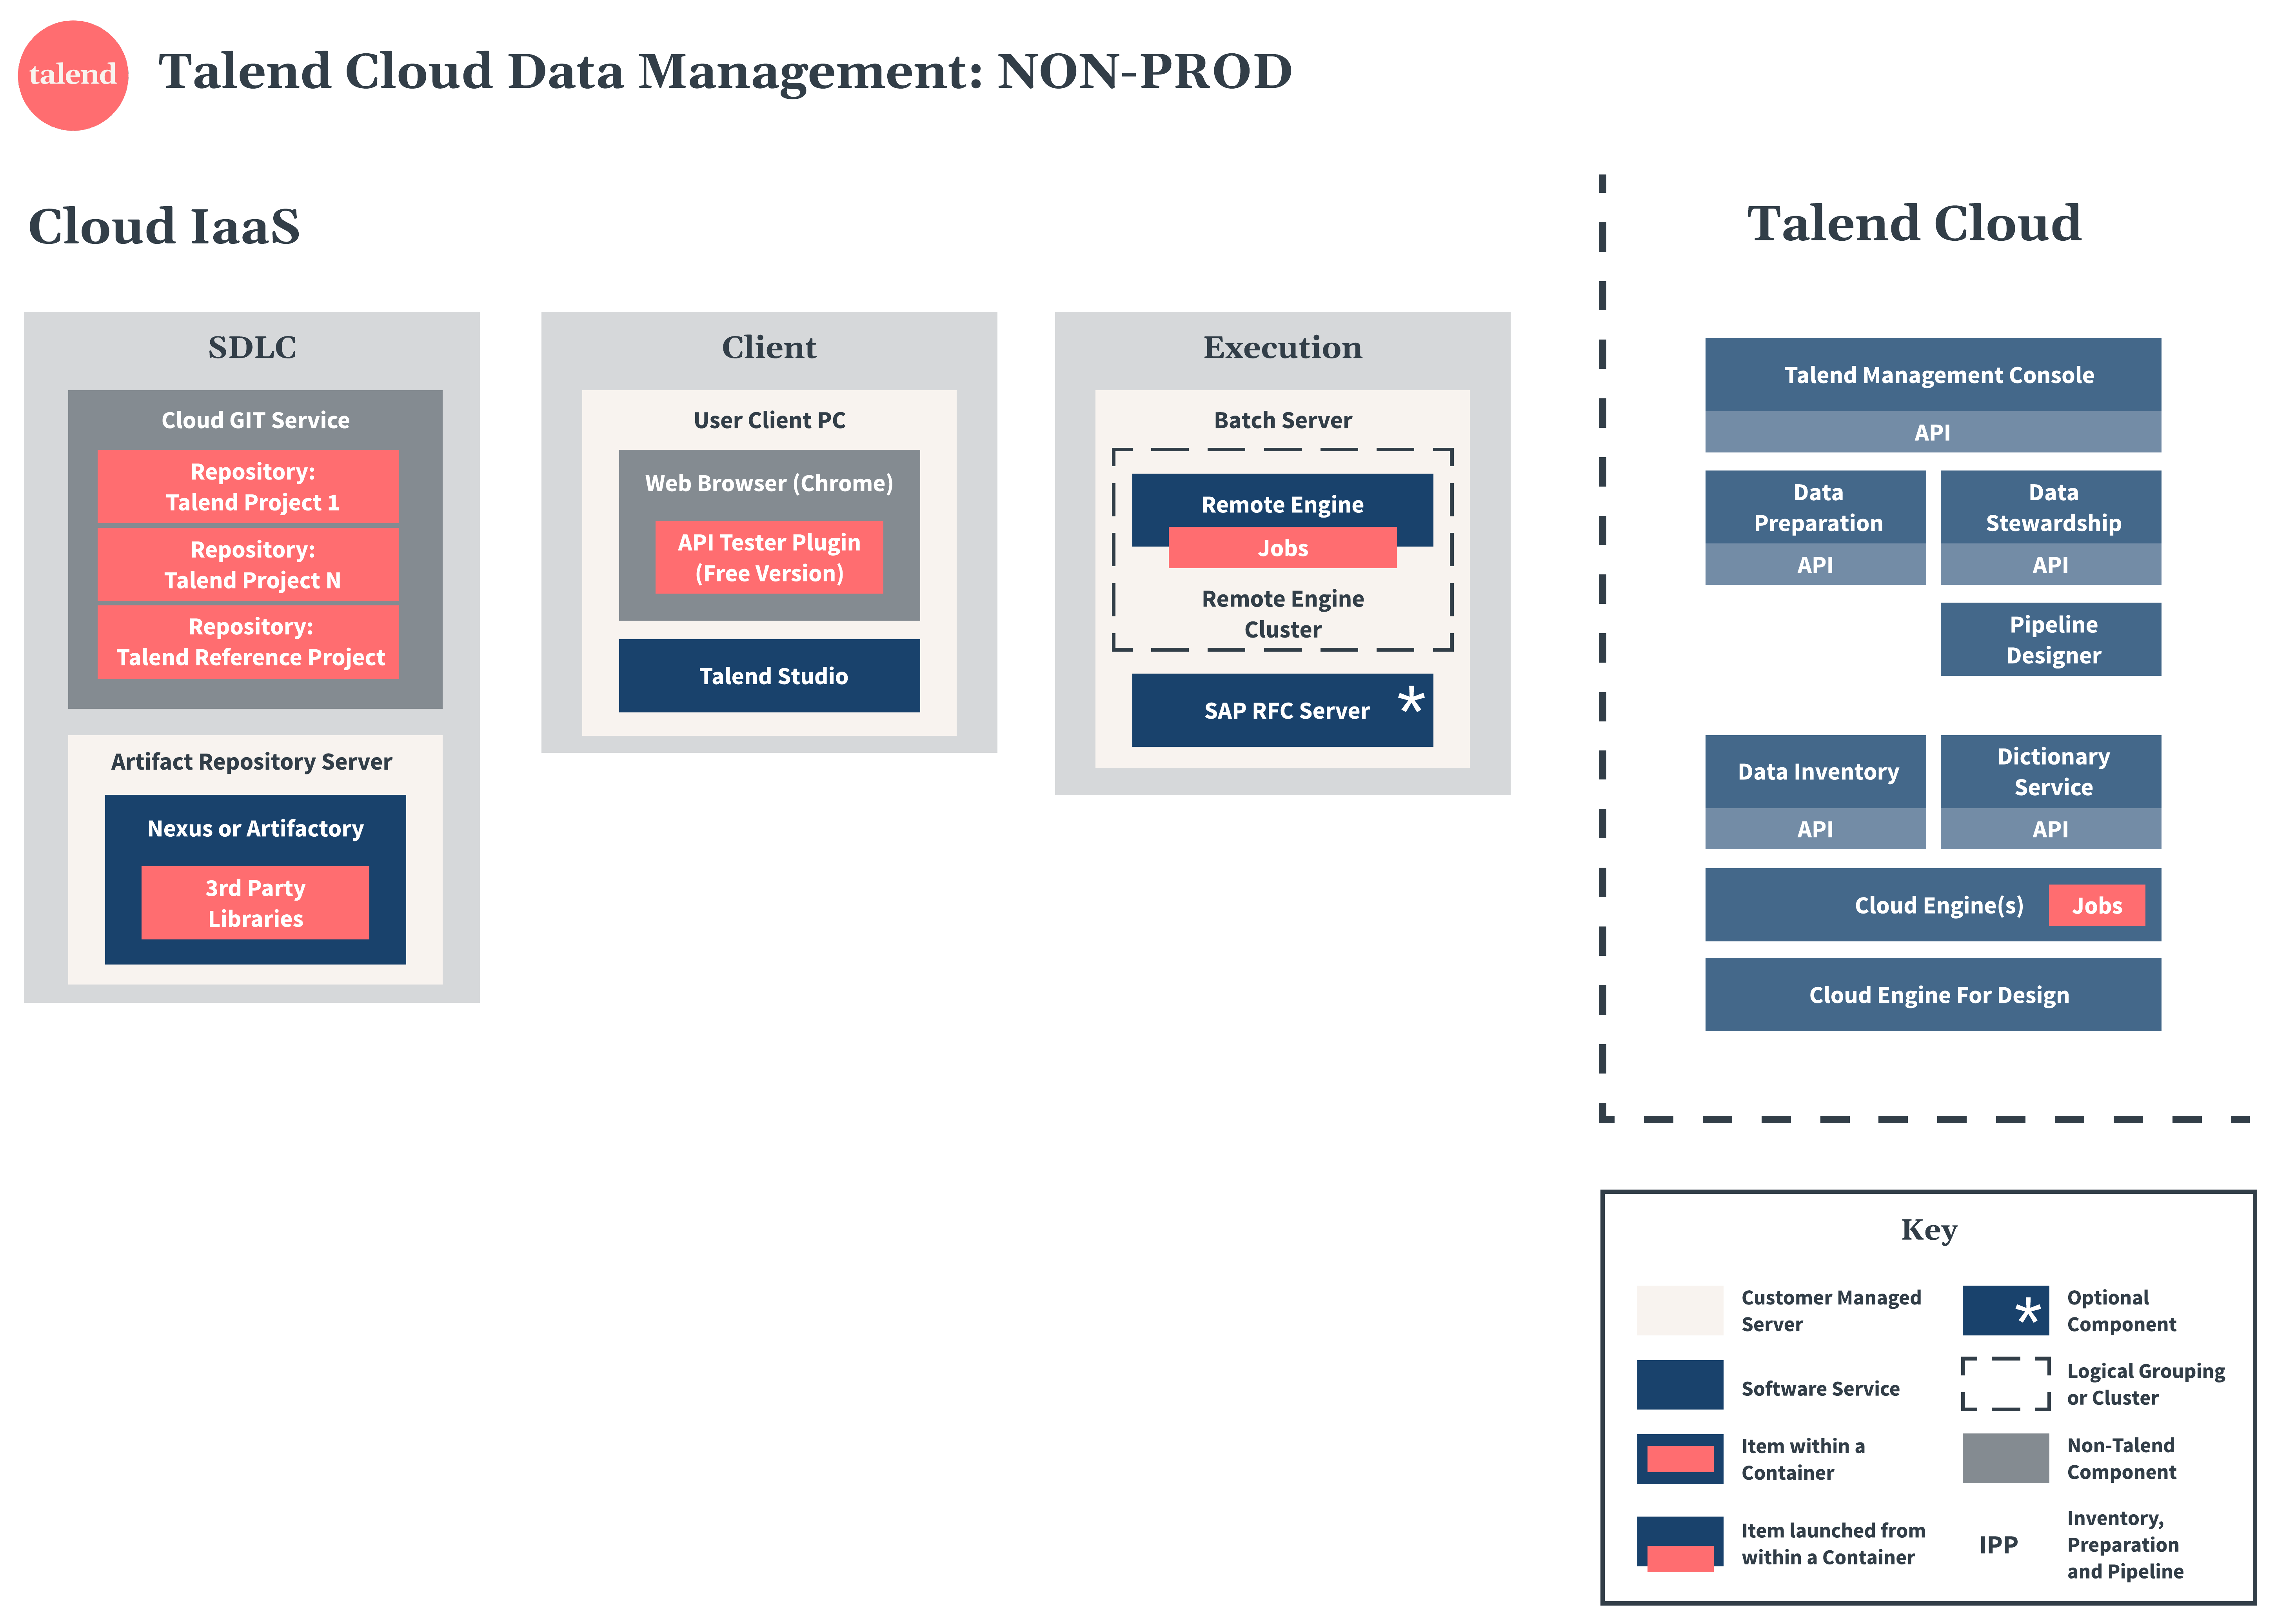 Talend Cloud Data Management non-production diagram.